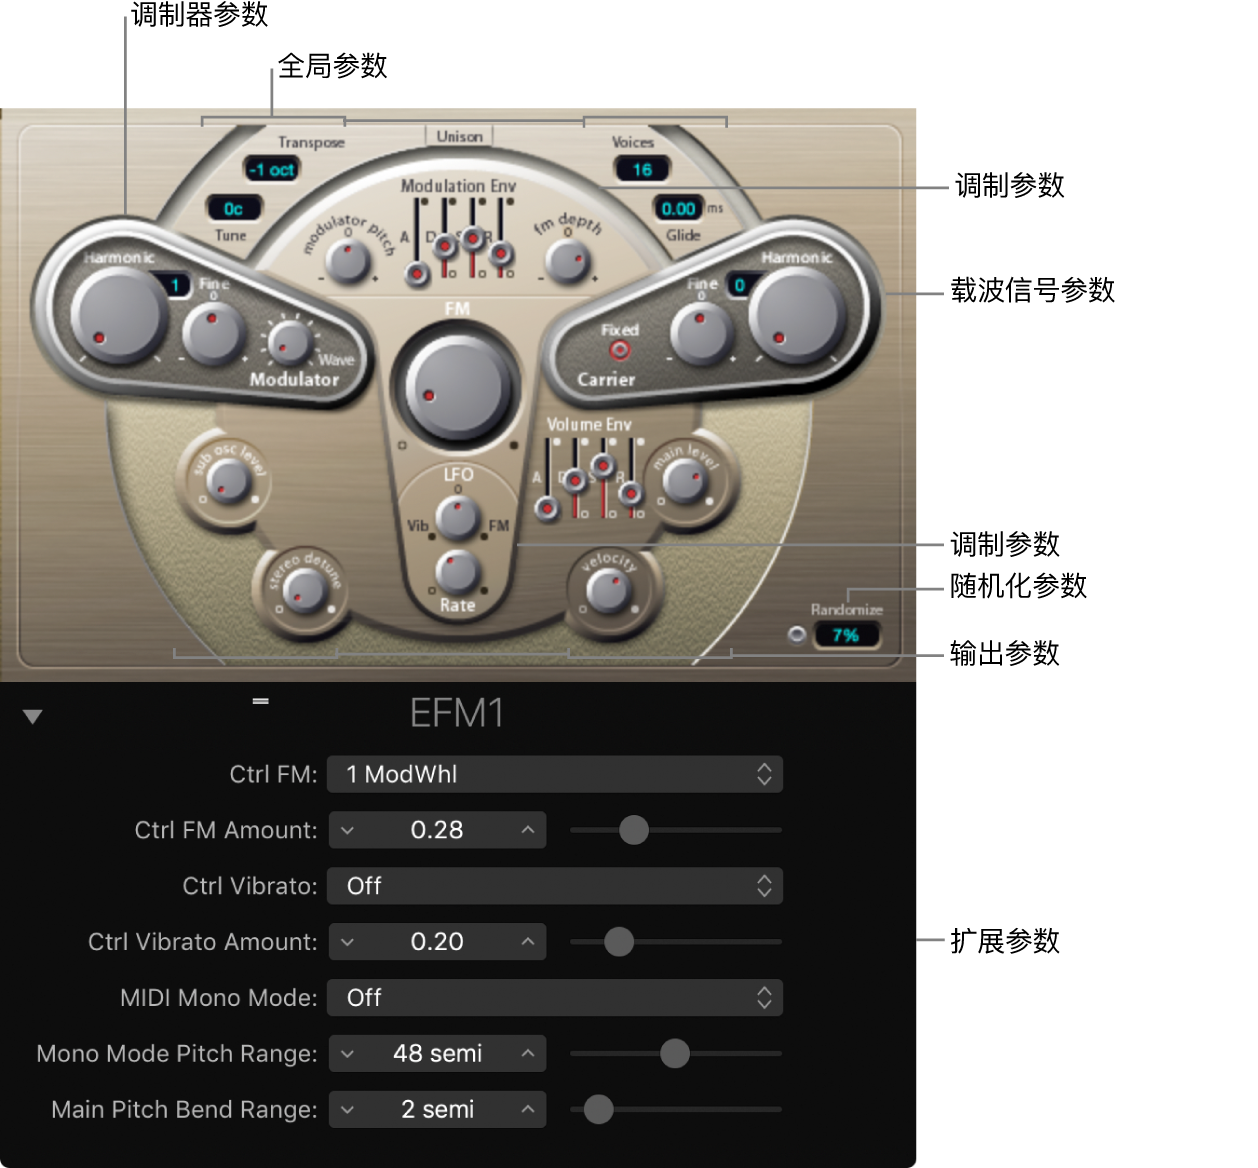 图。显示主界面区域的 EFM1 窗口。